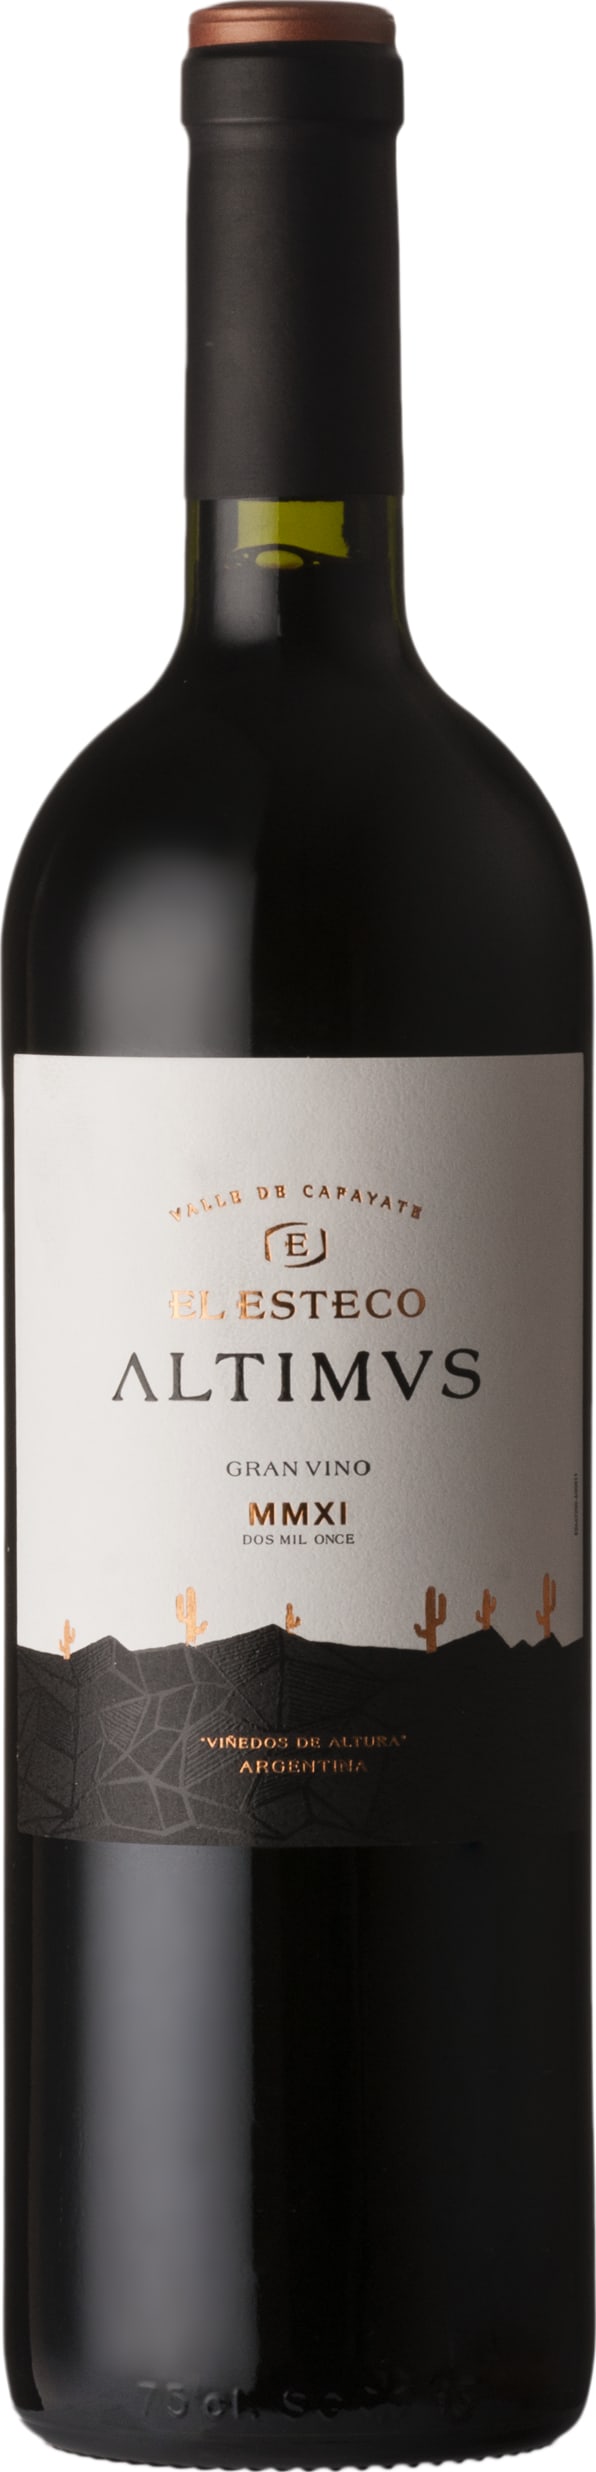 El Esteco Altimus 2017 75cl - Buy El Esteco Wines from GREAT WINES DIRECT wine shop